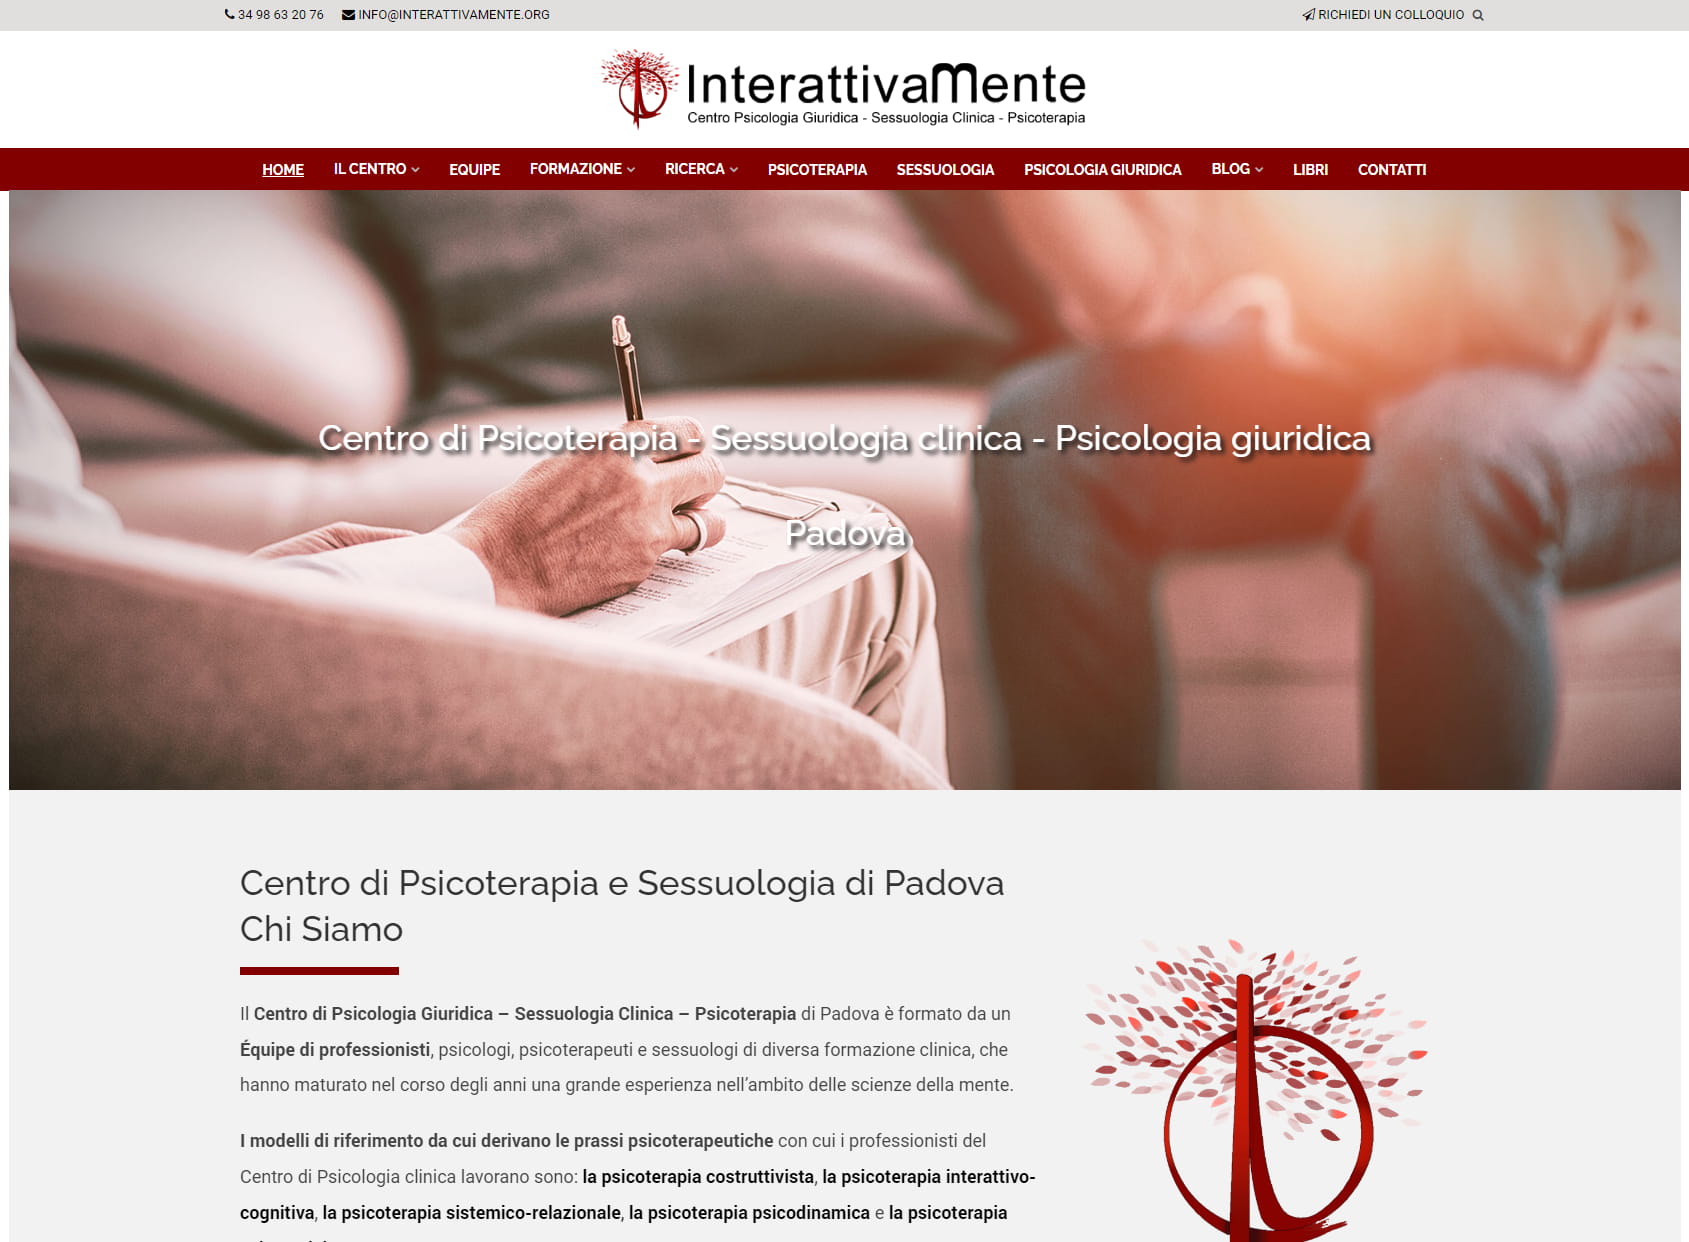 Centro Interattivamente - Psicologo, psicoterapeuta, sessuologo Padova